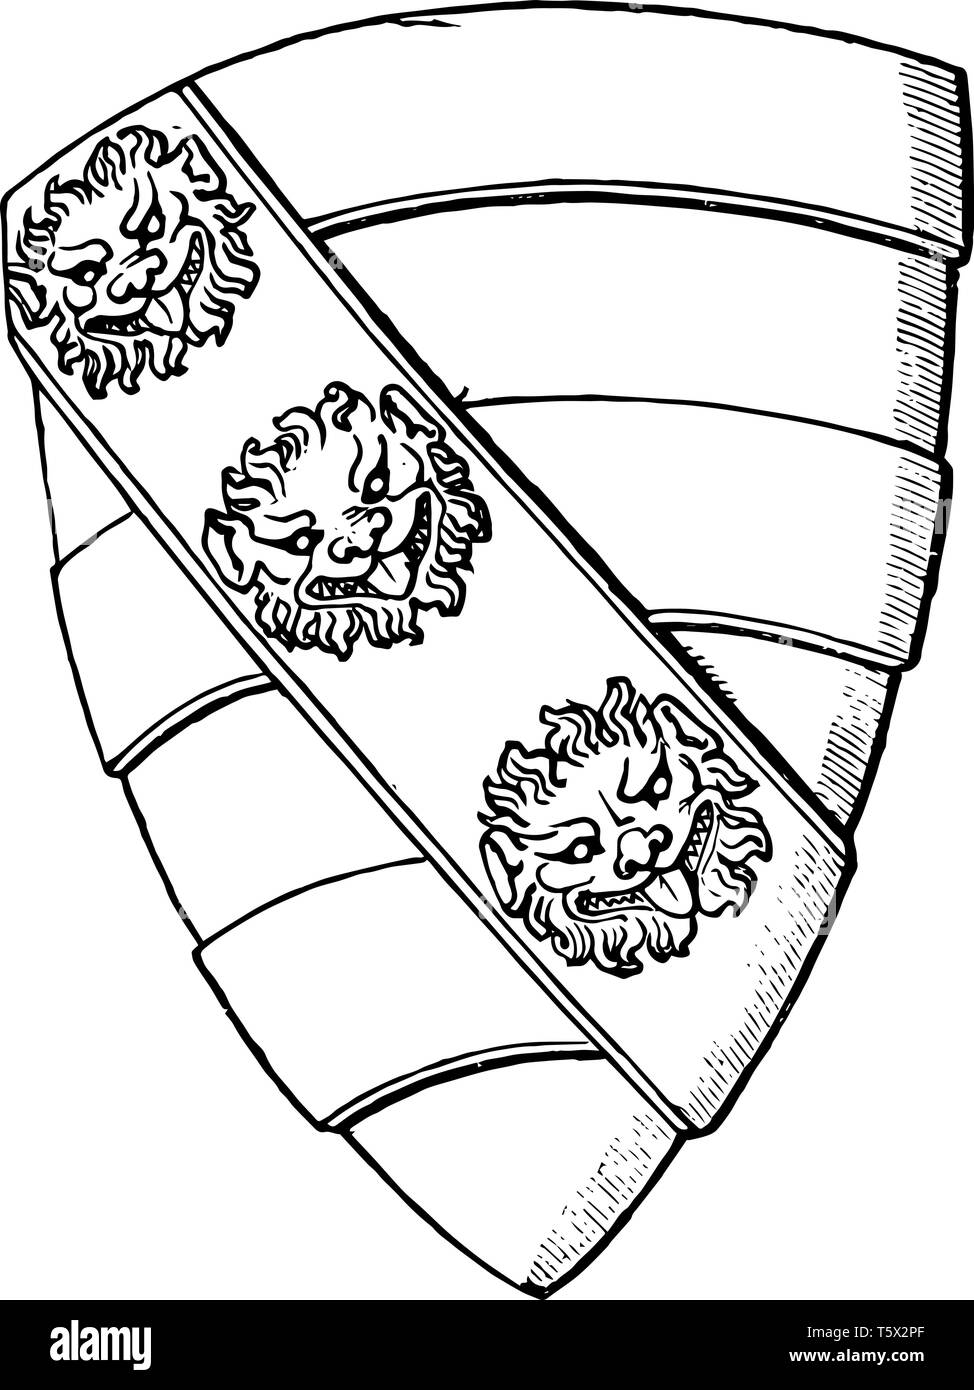 Cara de leones Imágenes de stock en blanco y negro - Alamy